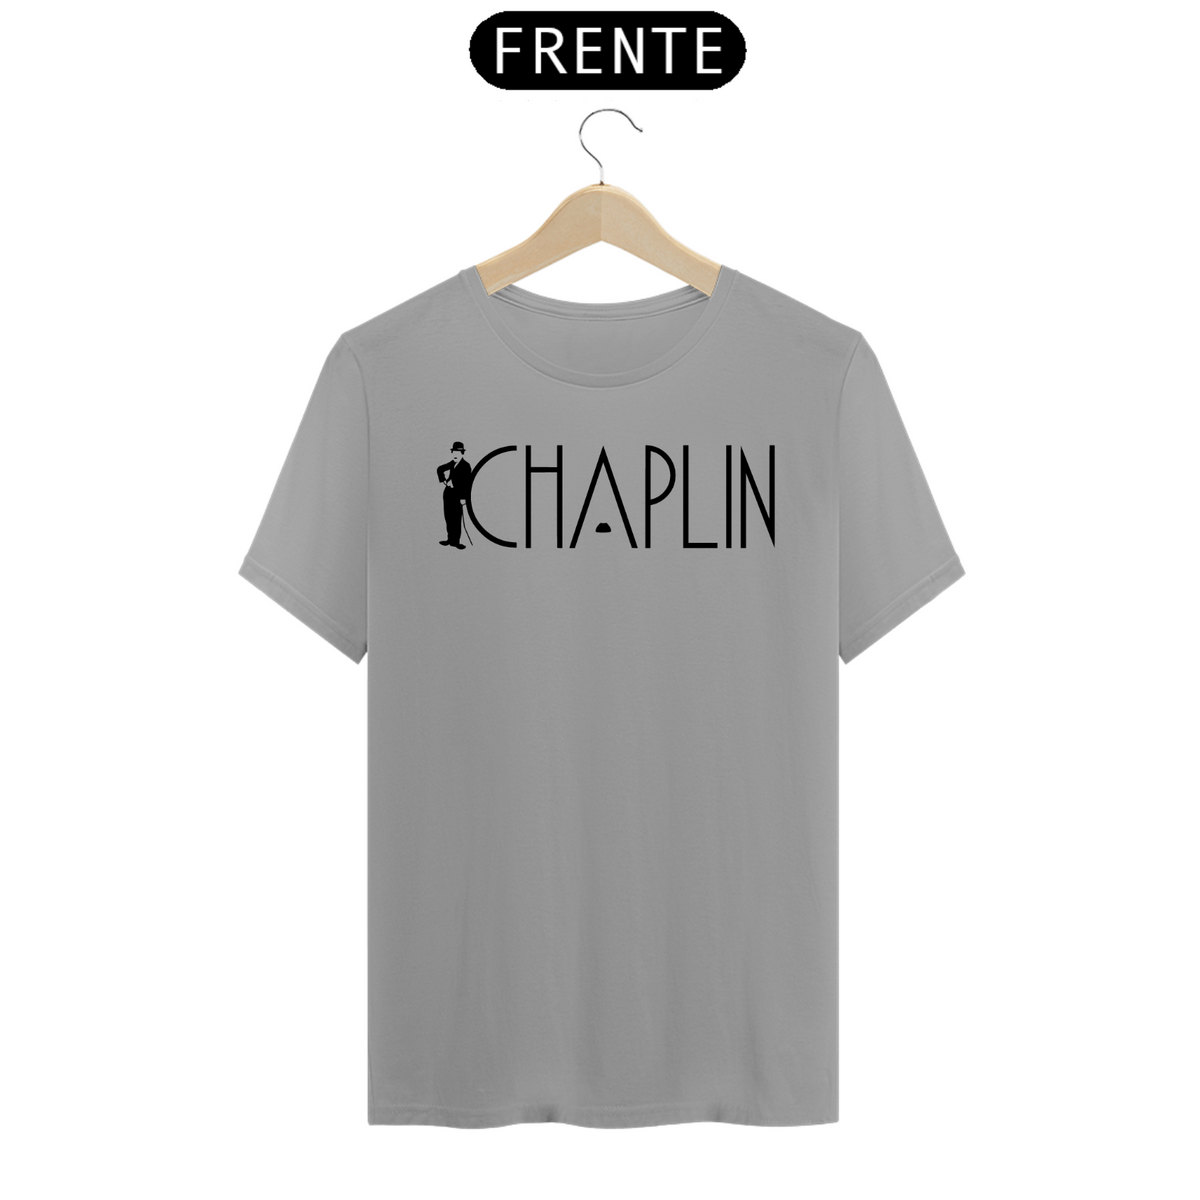 Nome do produto: Chaplin